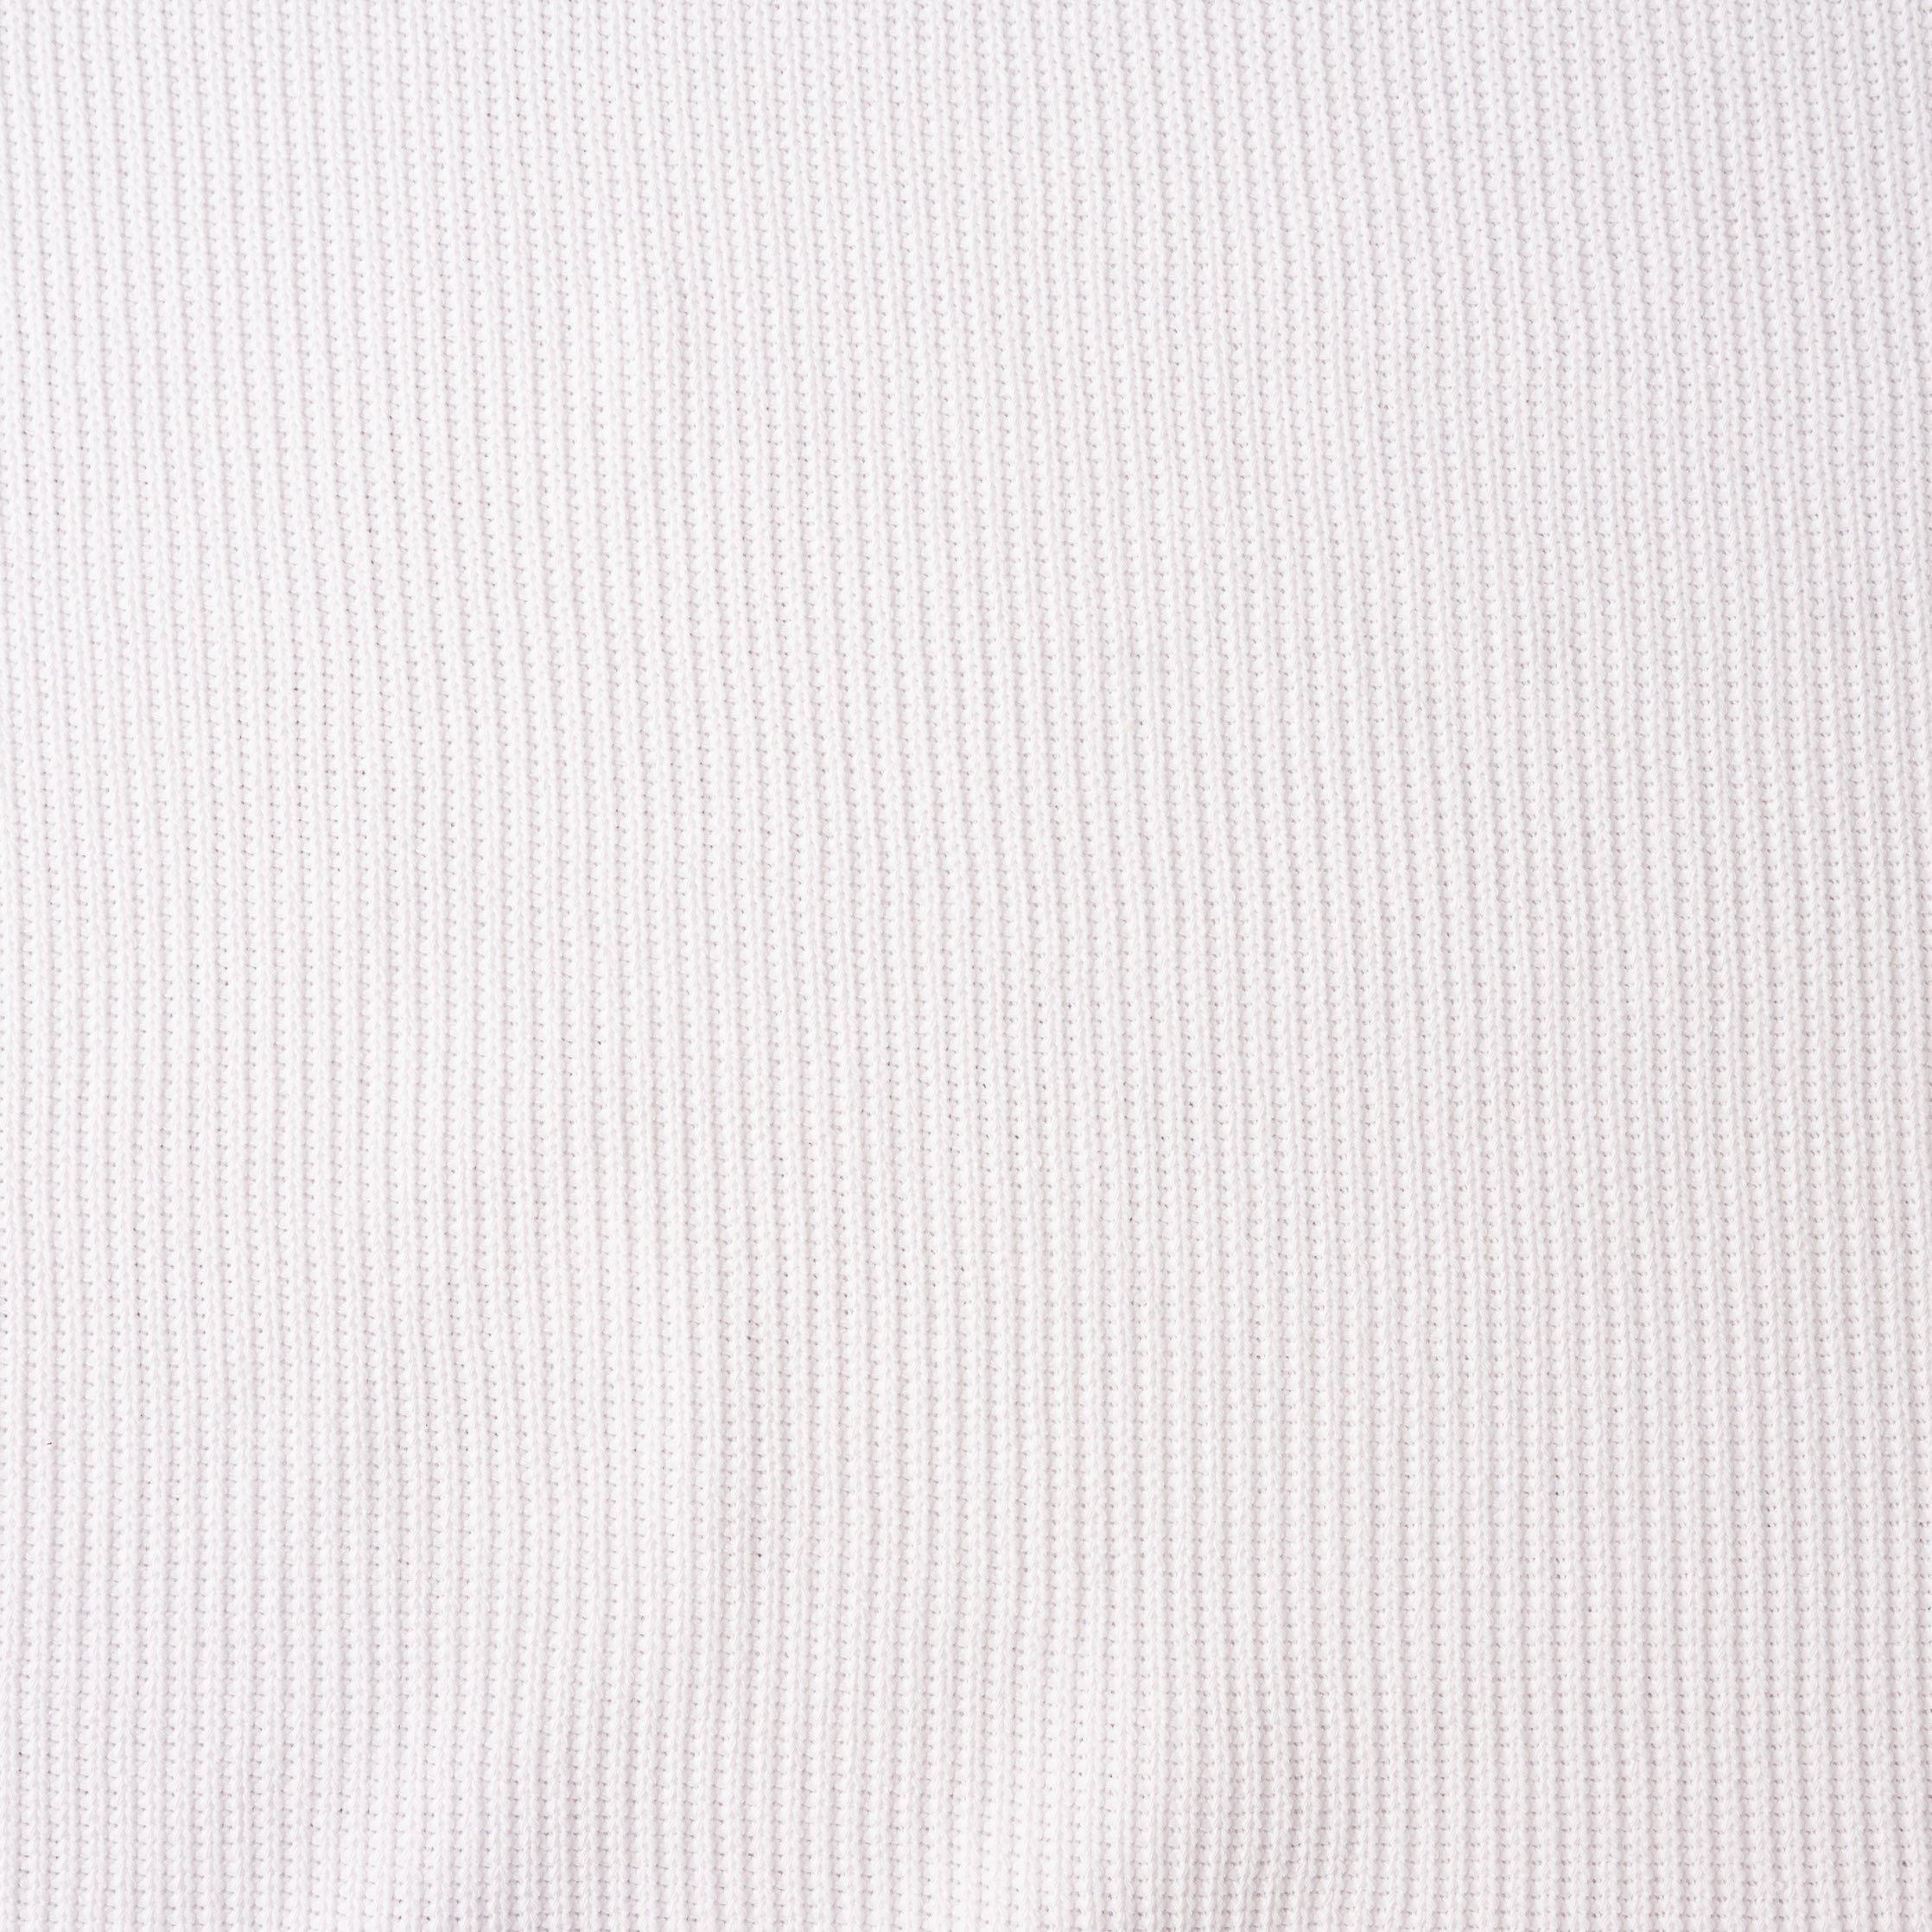 Strick Grob Knit Weiß 0,5m